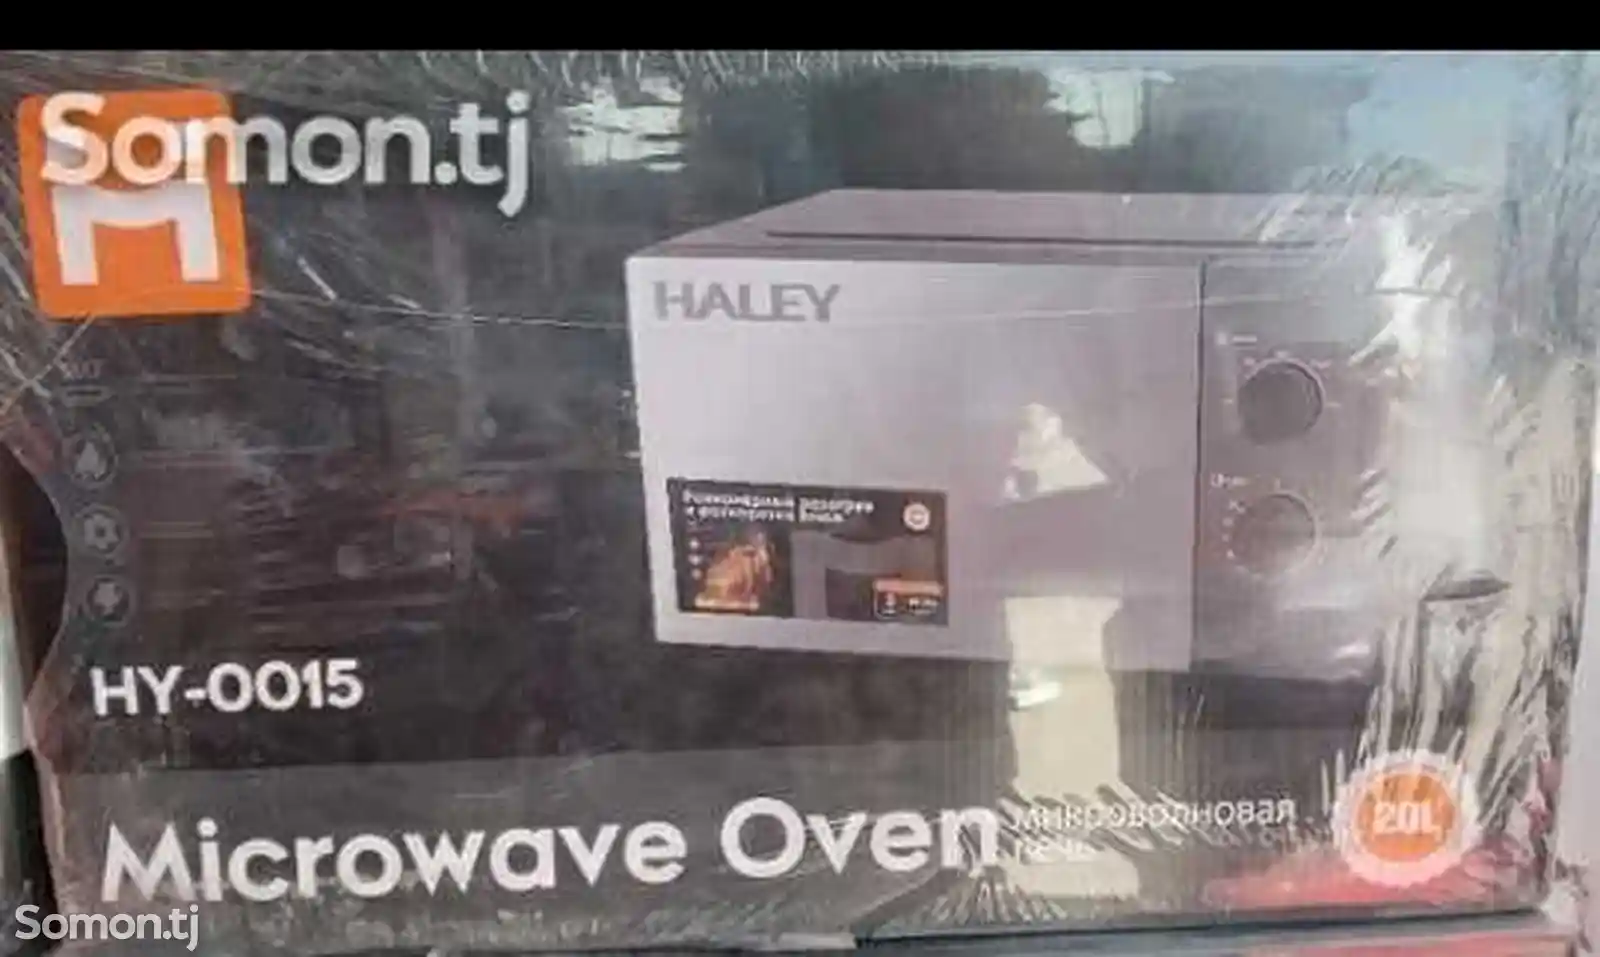 Микроволновая печь Haley HY-0015-2